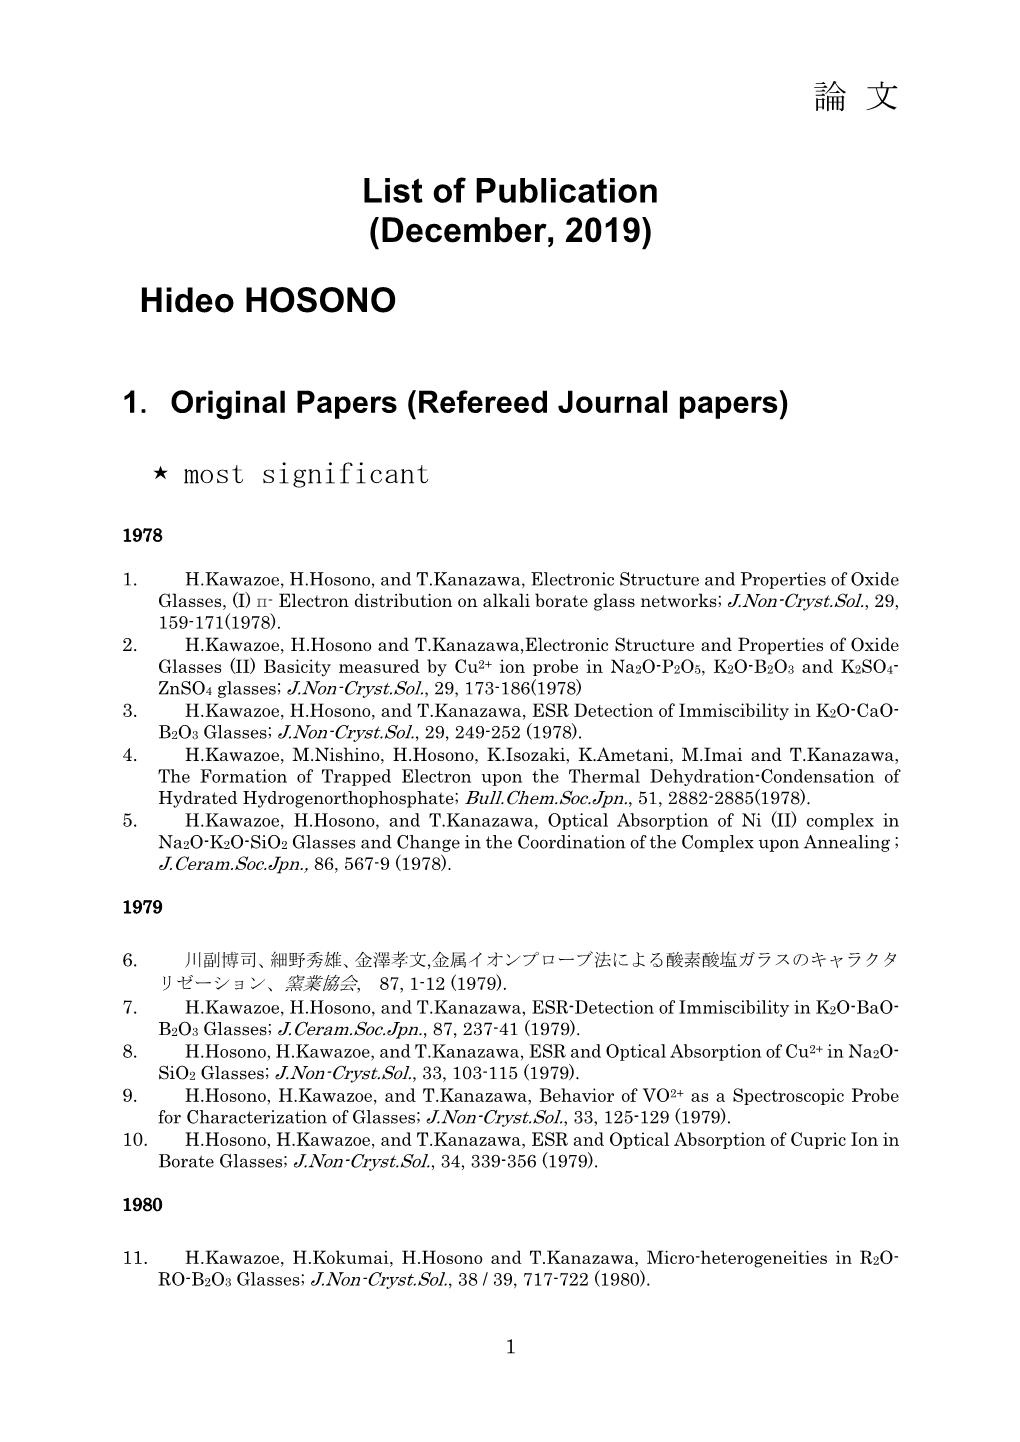 論 文 List of Publication (December, 2019) Hideo HOSONO